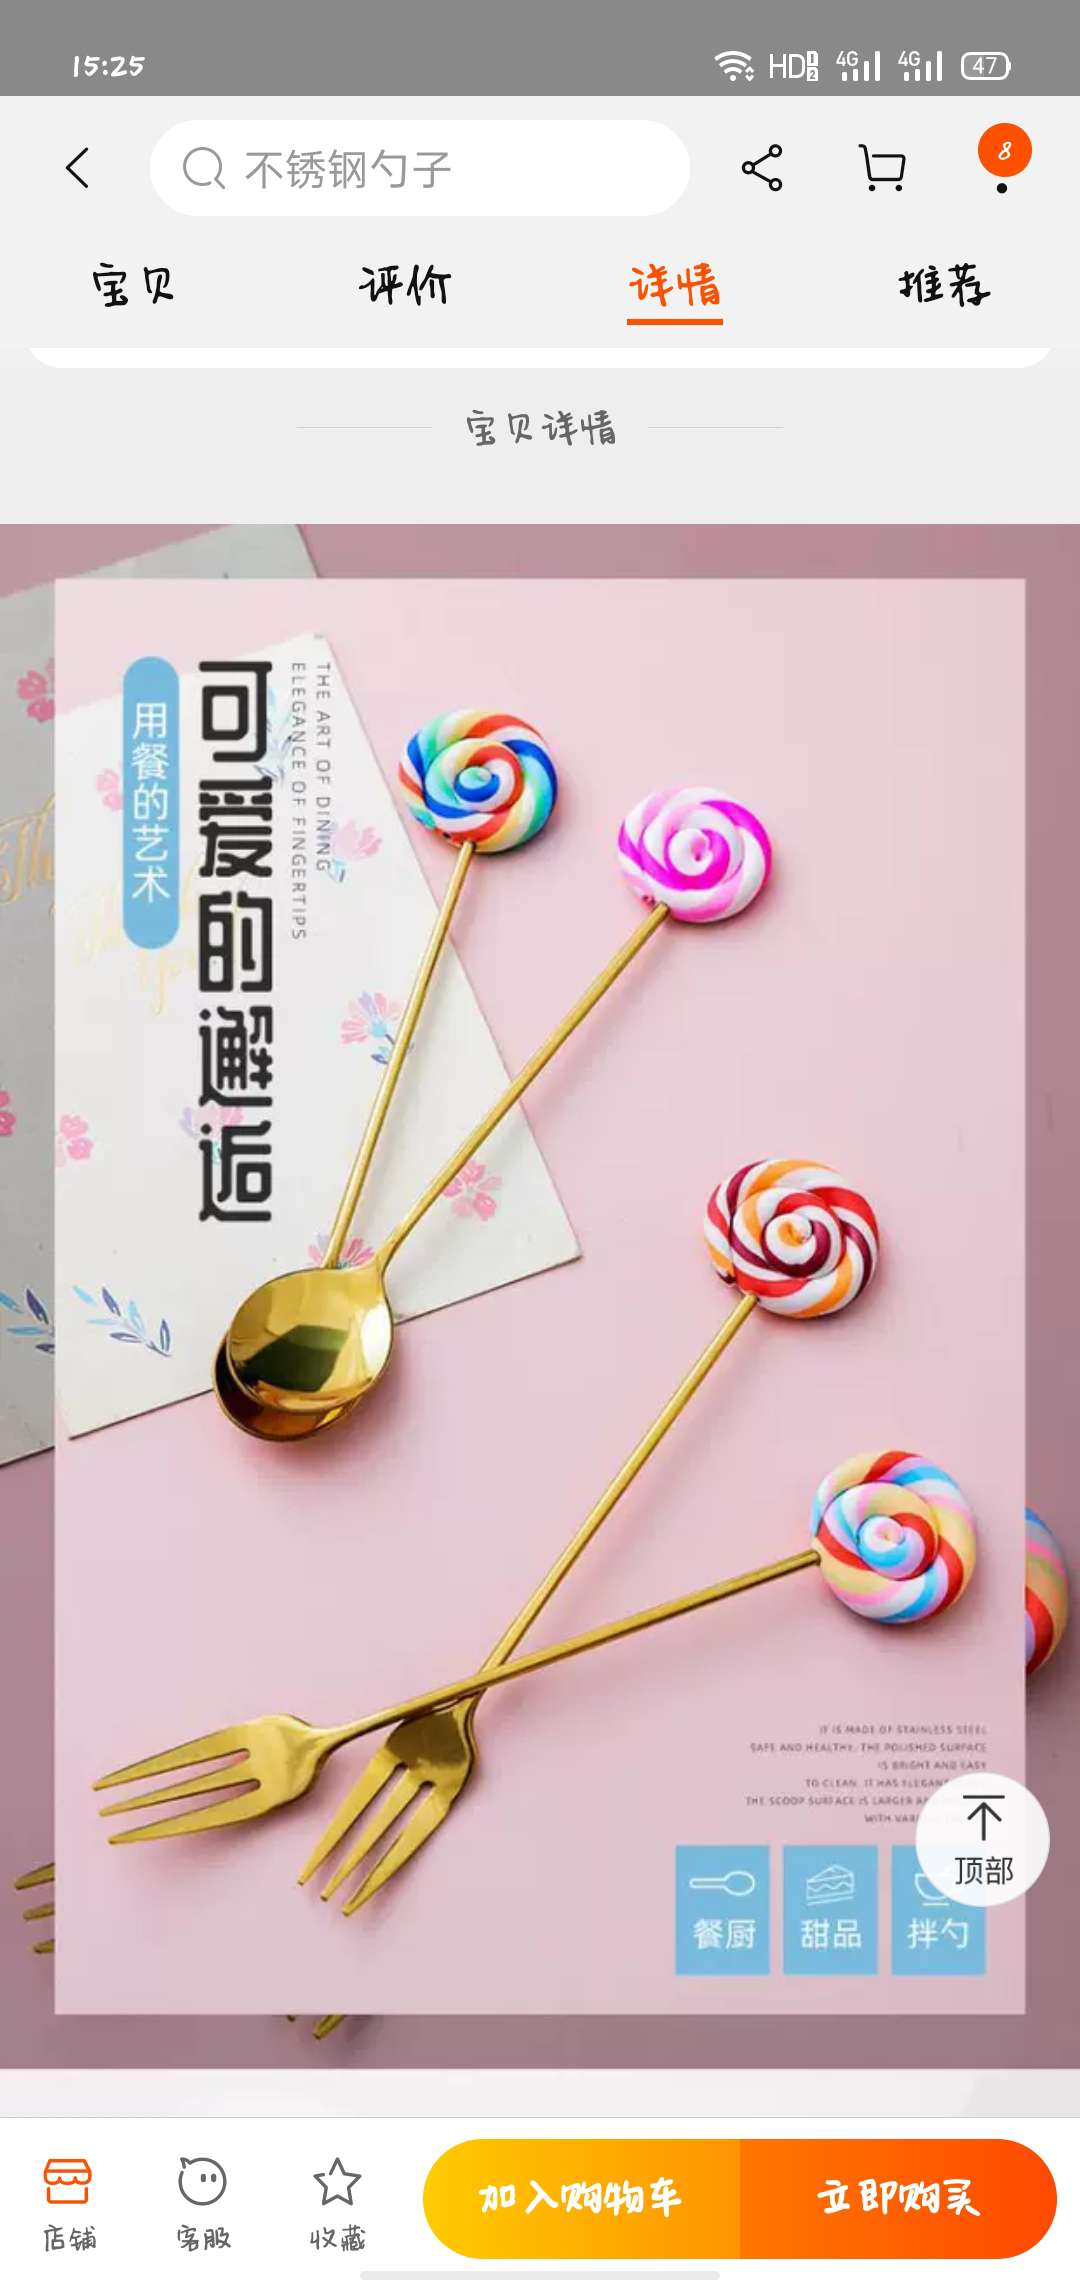 摔不坏的棒棒糖不锈钢搅拌勺子韩式可爱创意水果叉冰淇淋勺汤勺创意棒棒糖钛金勺叉细节图